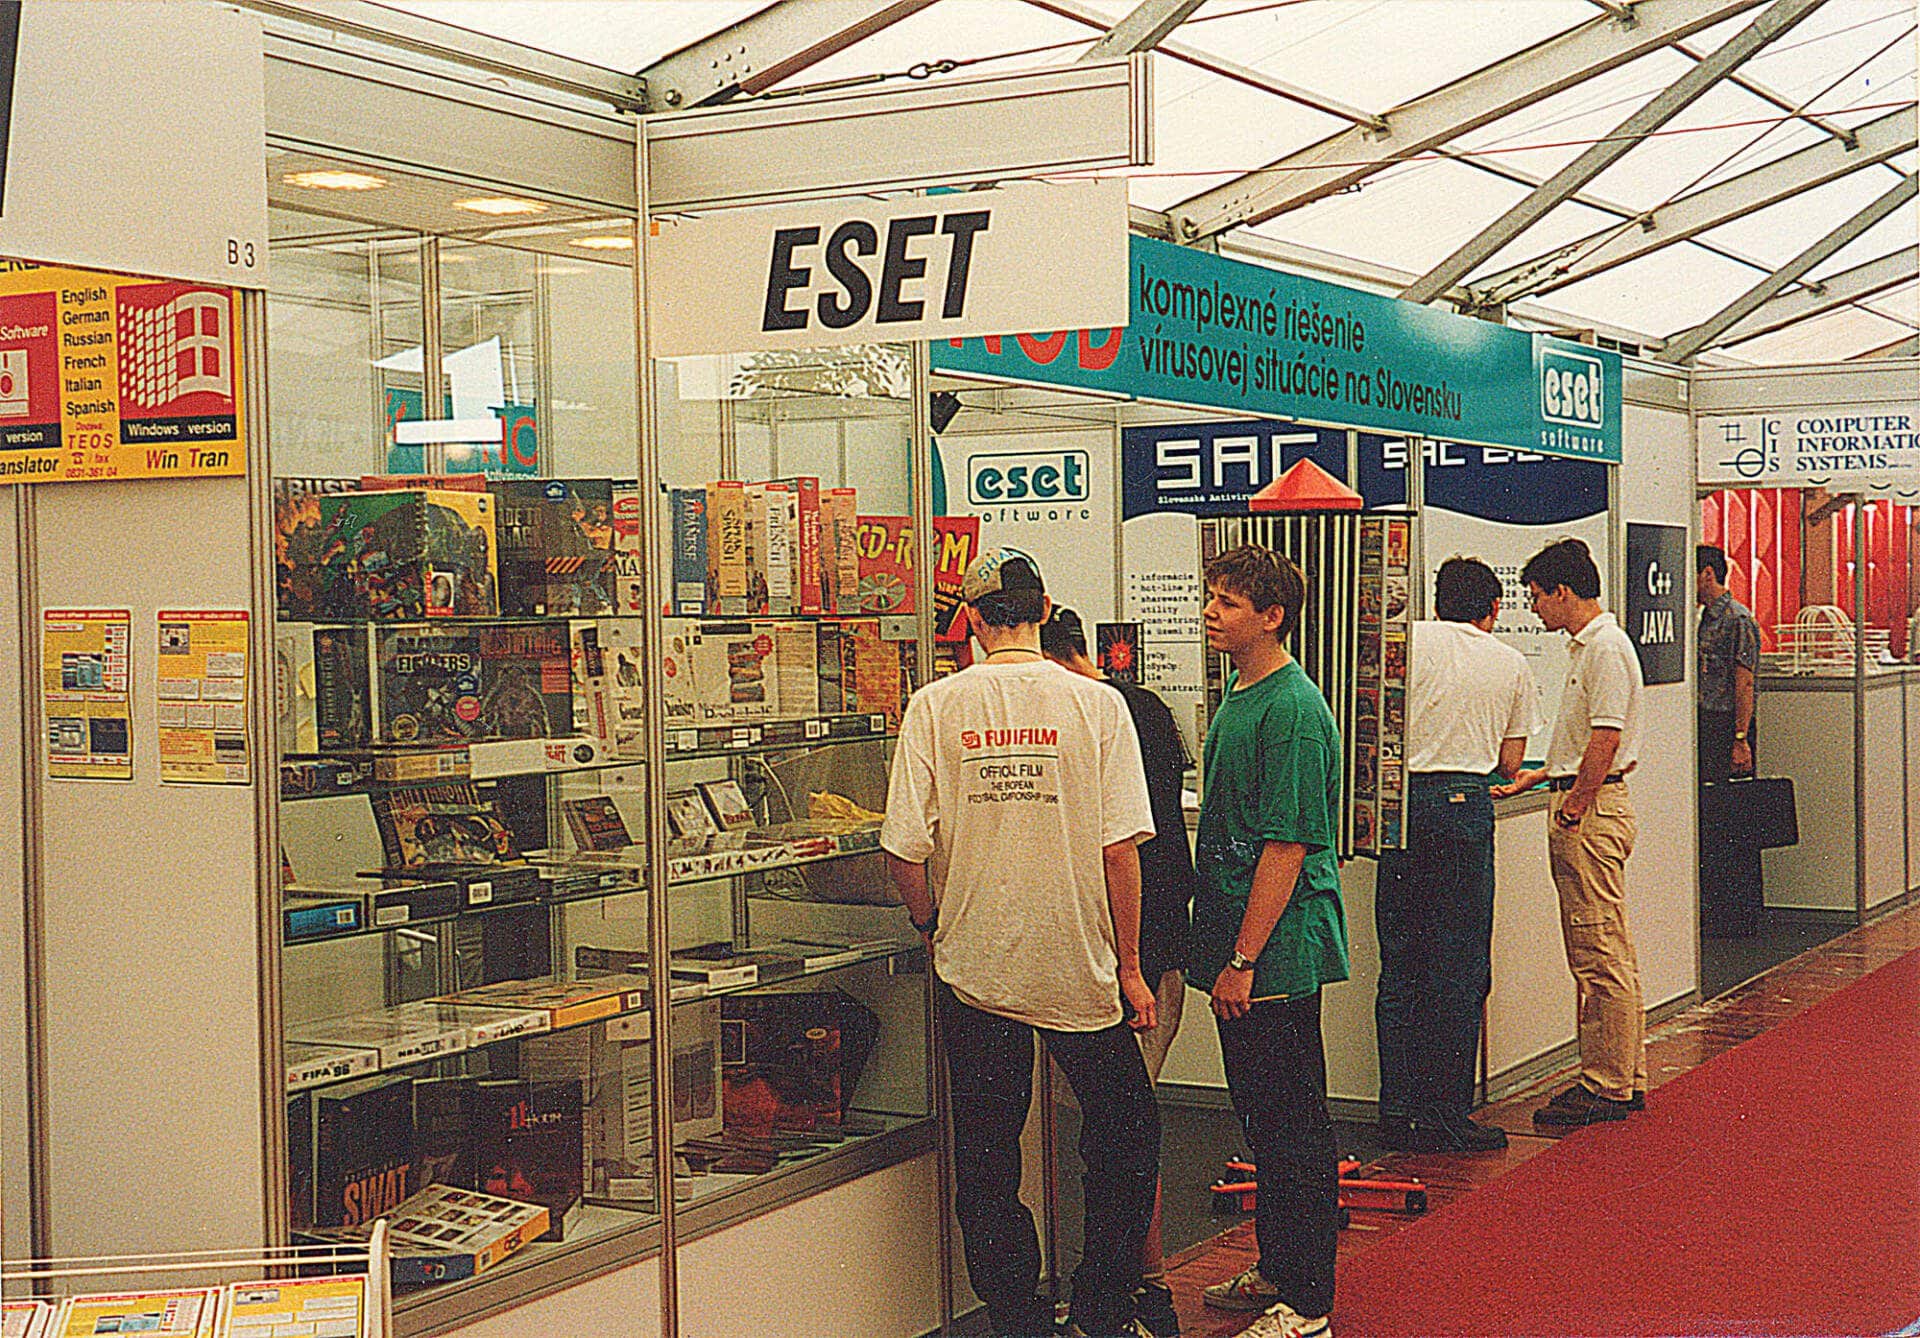 Slovenská spoločnosť ESET oslavuje svoje 30 narodeniny